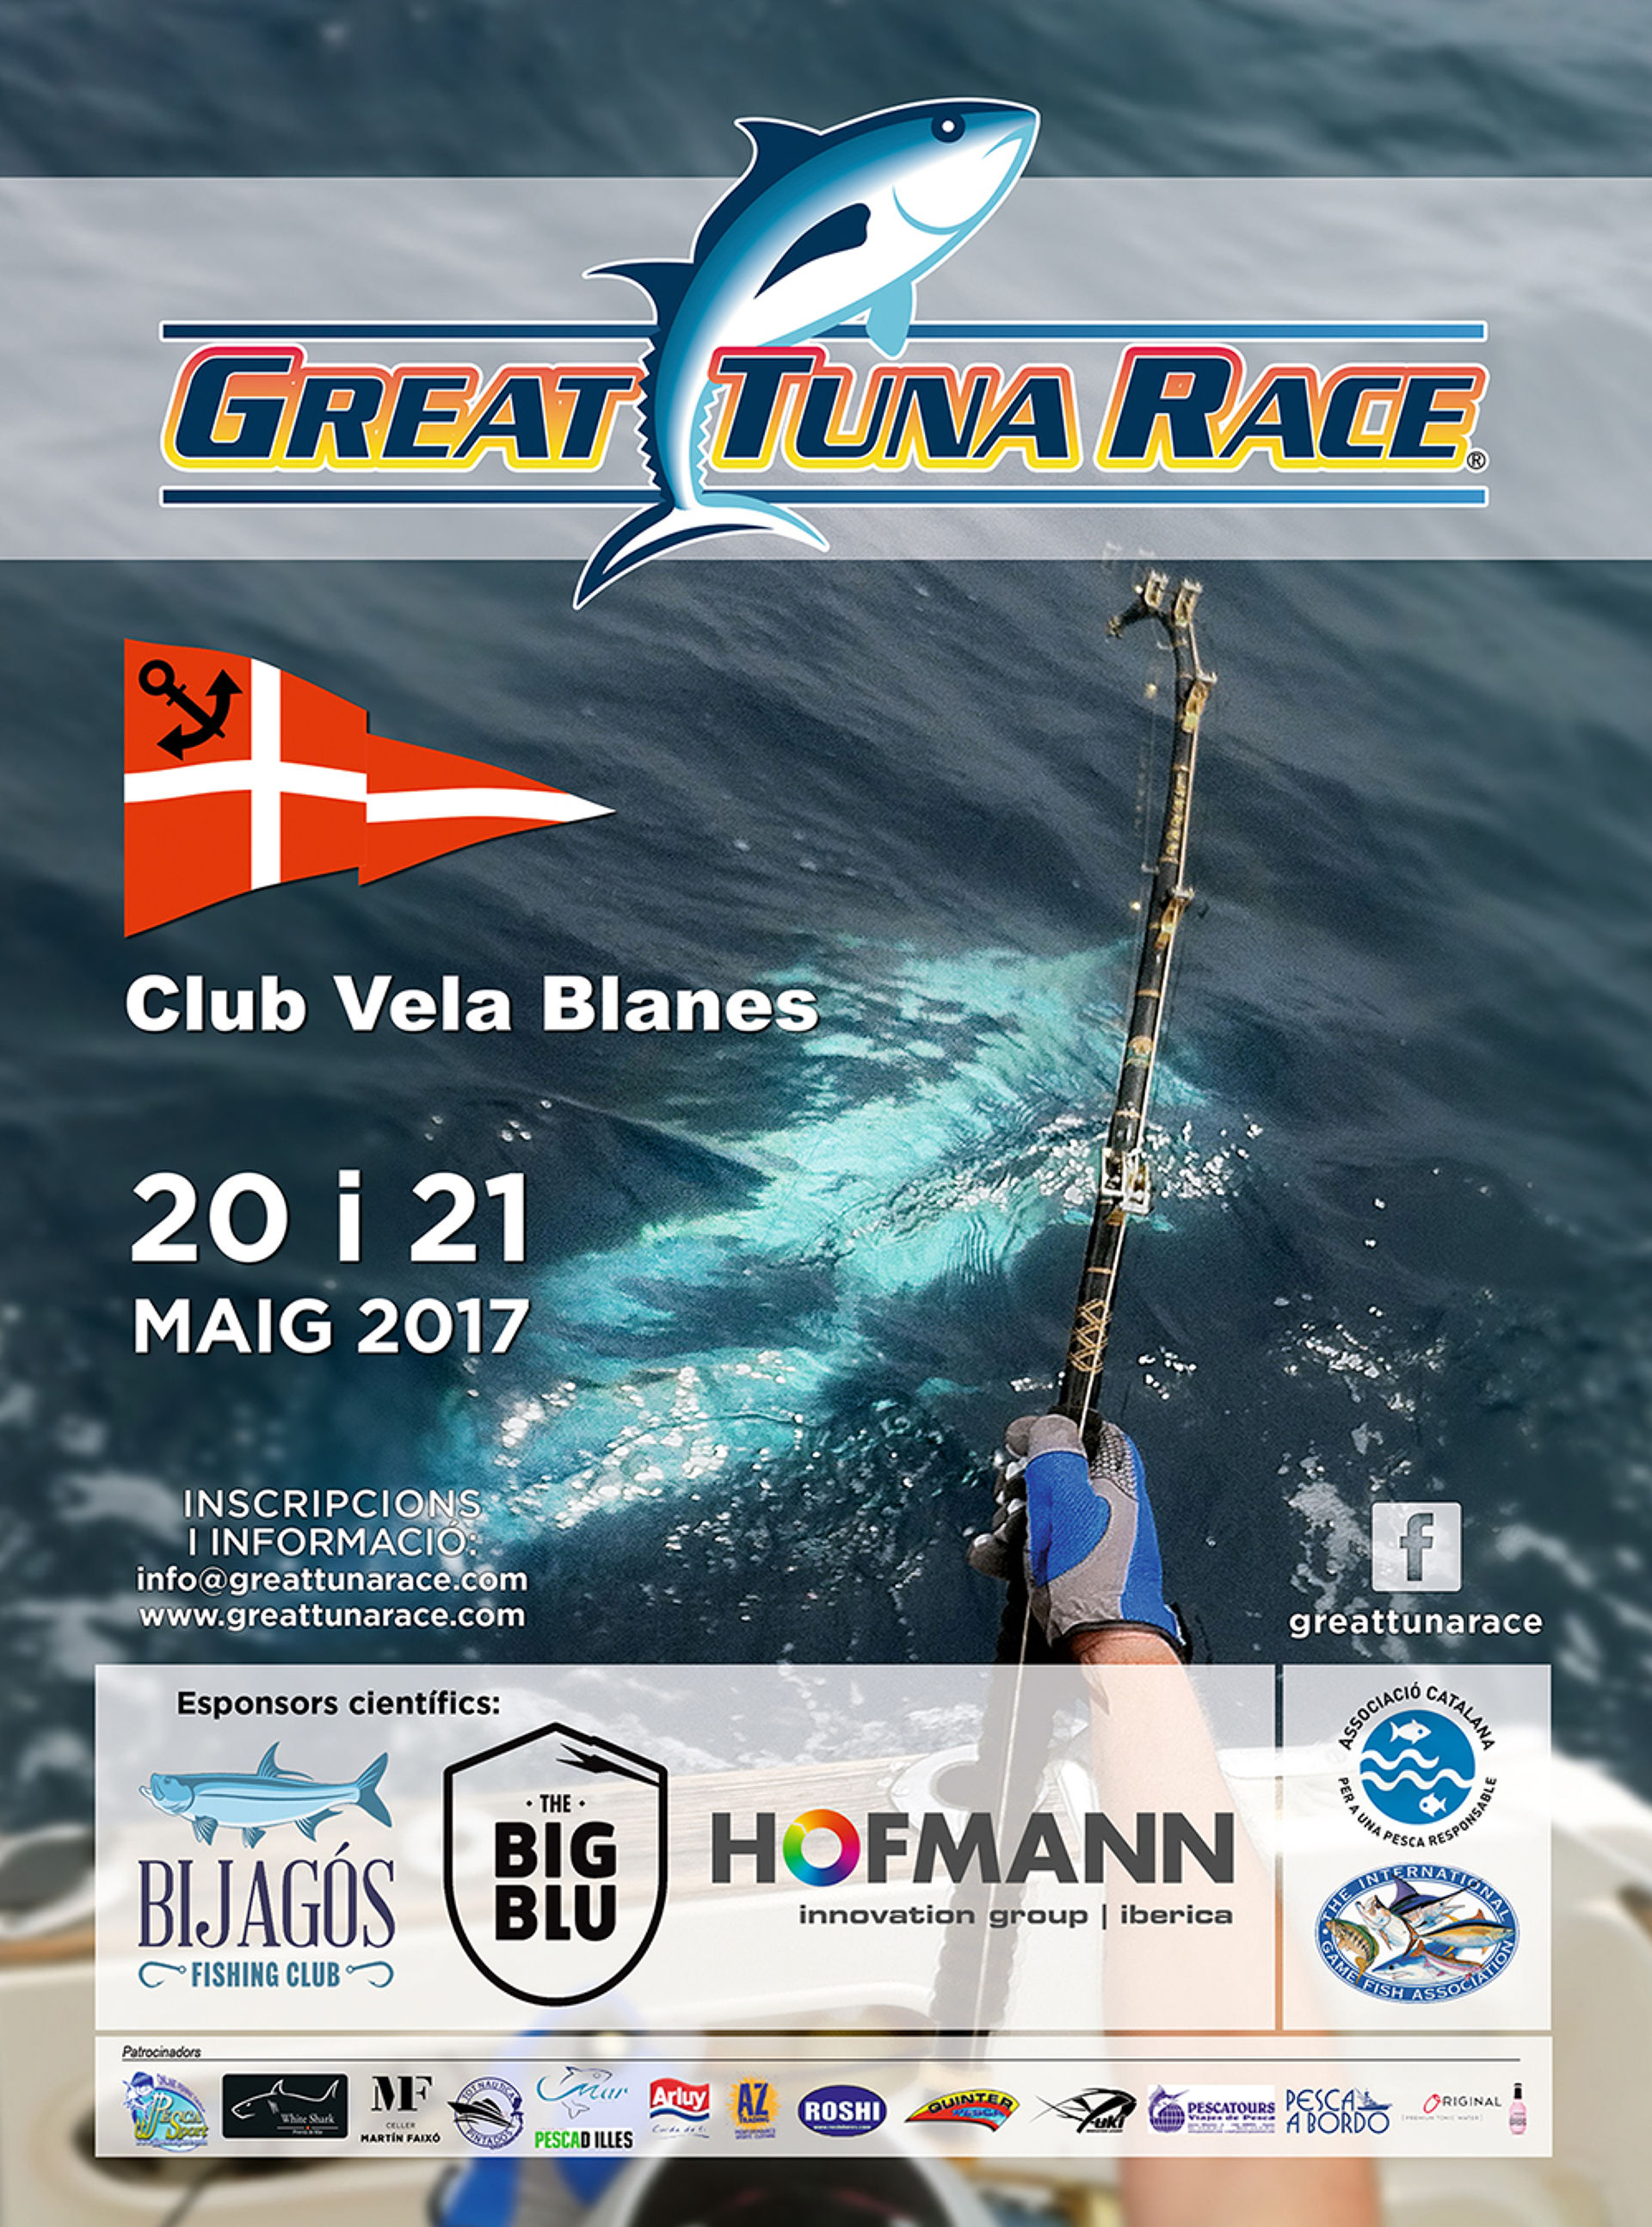 El Club Vela Blanes per tercer any consecutiu acollirà la Great Tuna Race